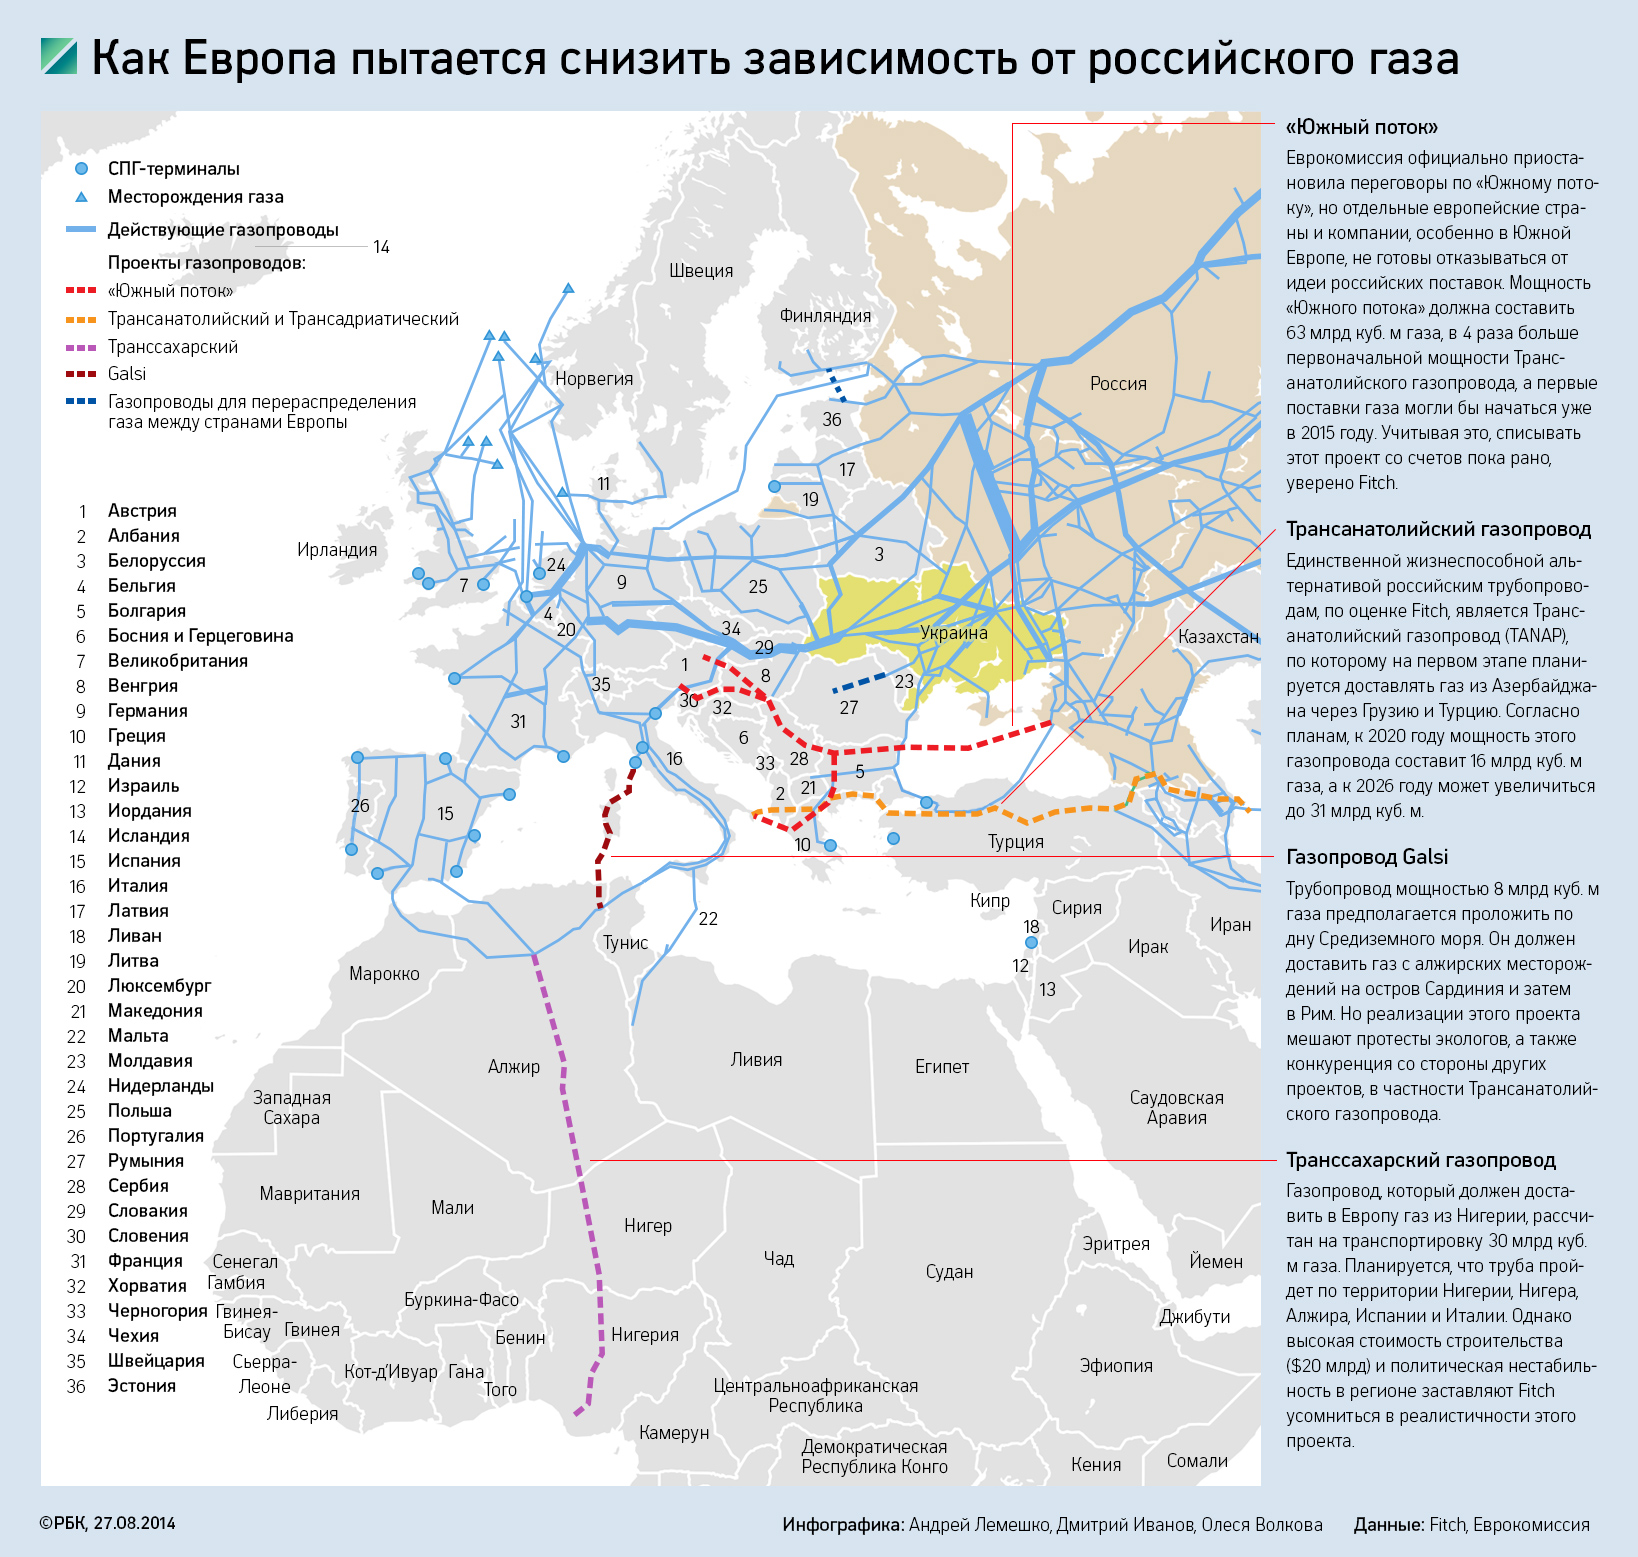 «Укртрансгаз» сообщил о снижении поставок российского газа в Европу